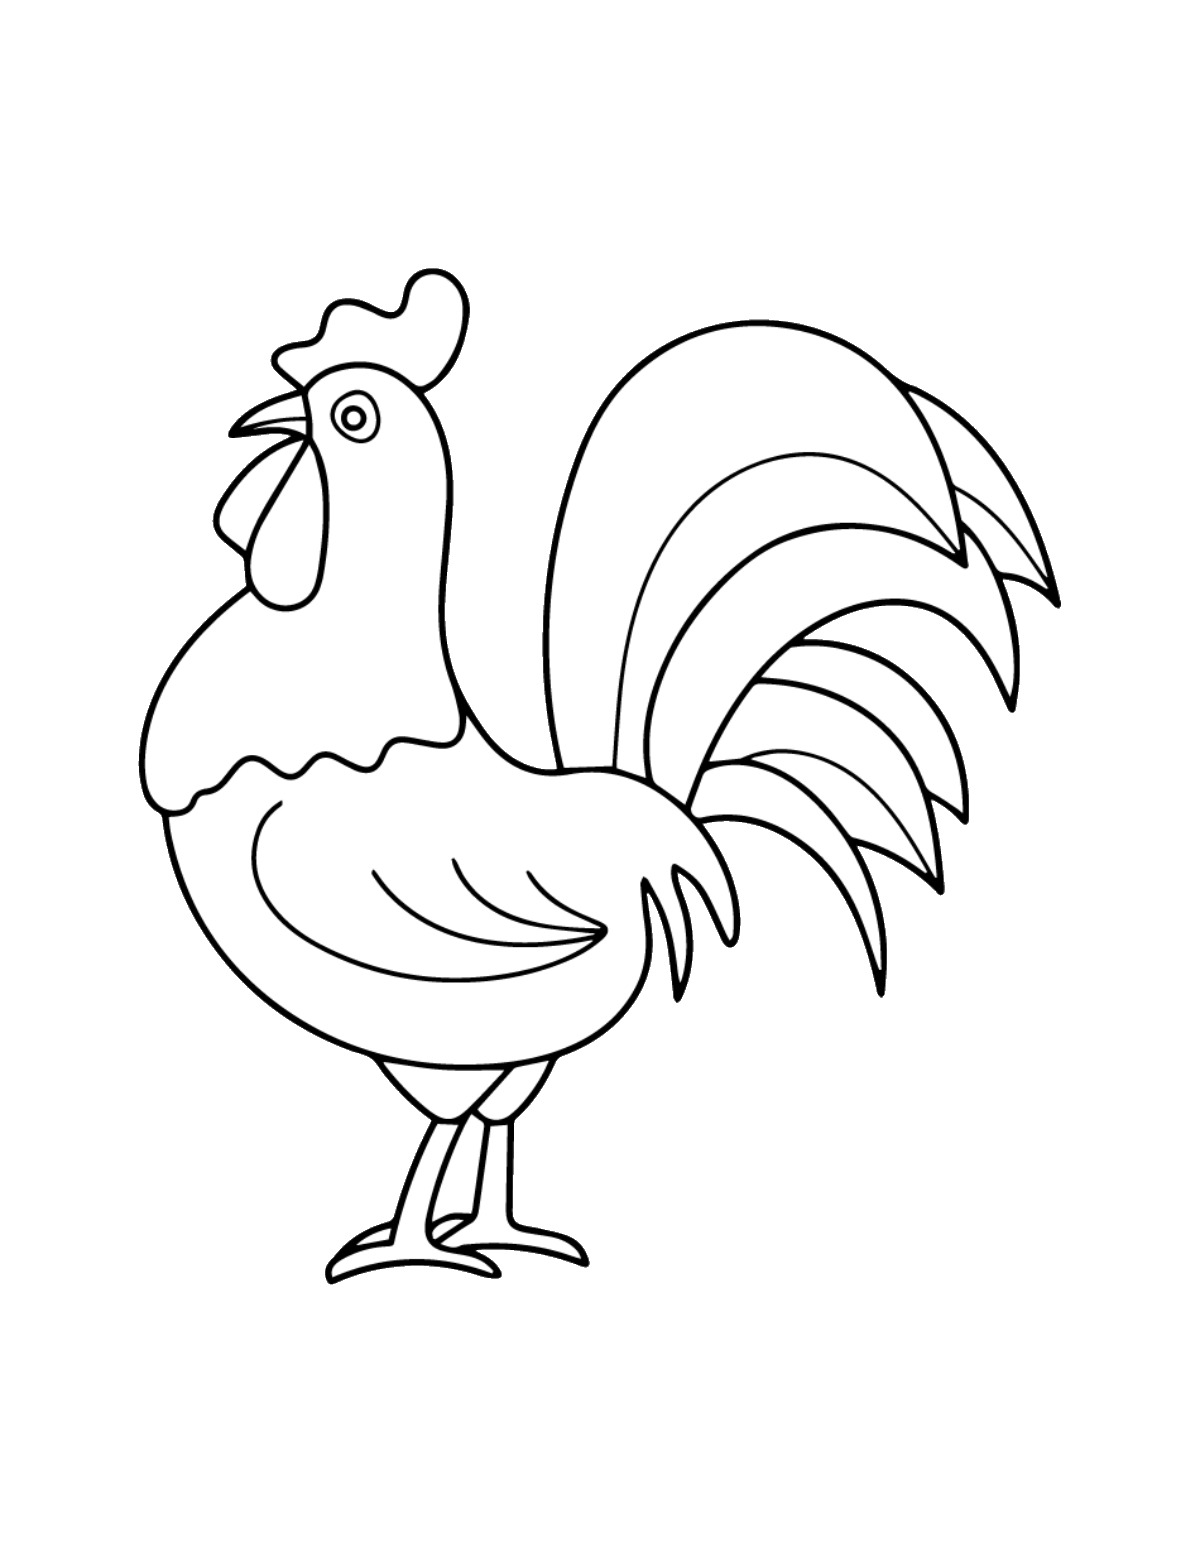 Bạn yêu thích màu sắc và con gà đáng yêu? Bạn có thể tô màu cho những con gà dễ thương và vui tức tưởi bằng cách xem bức tranh này. Tận hưởng giờ phút thư giãn cùng màu nước và bút chì!